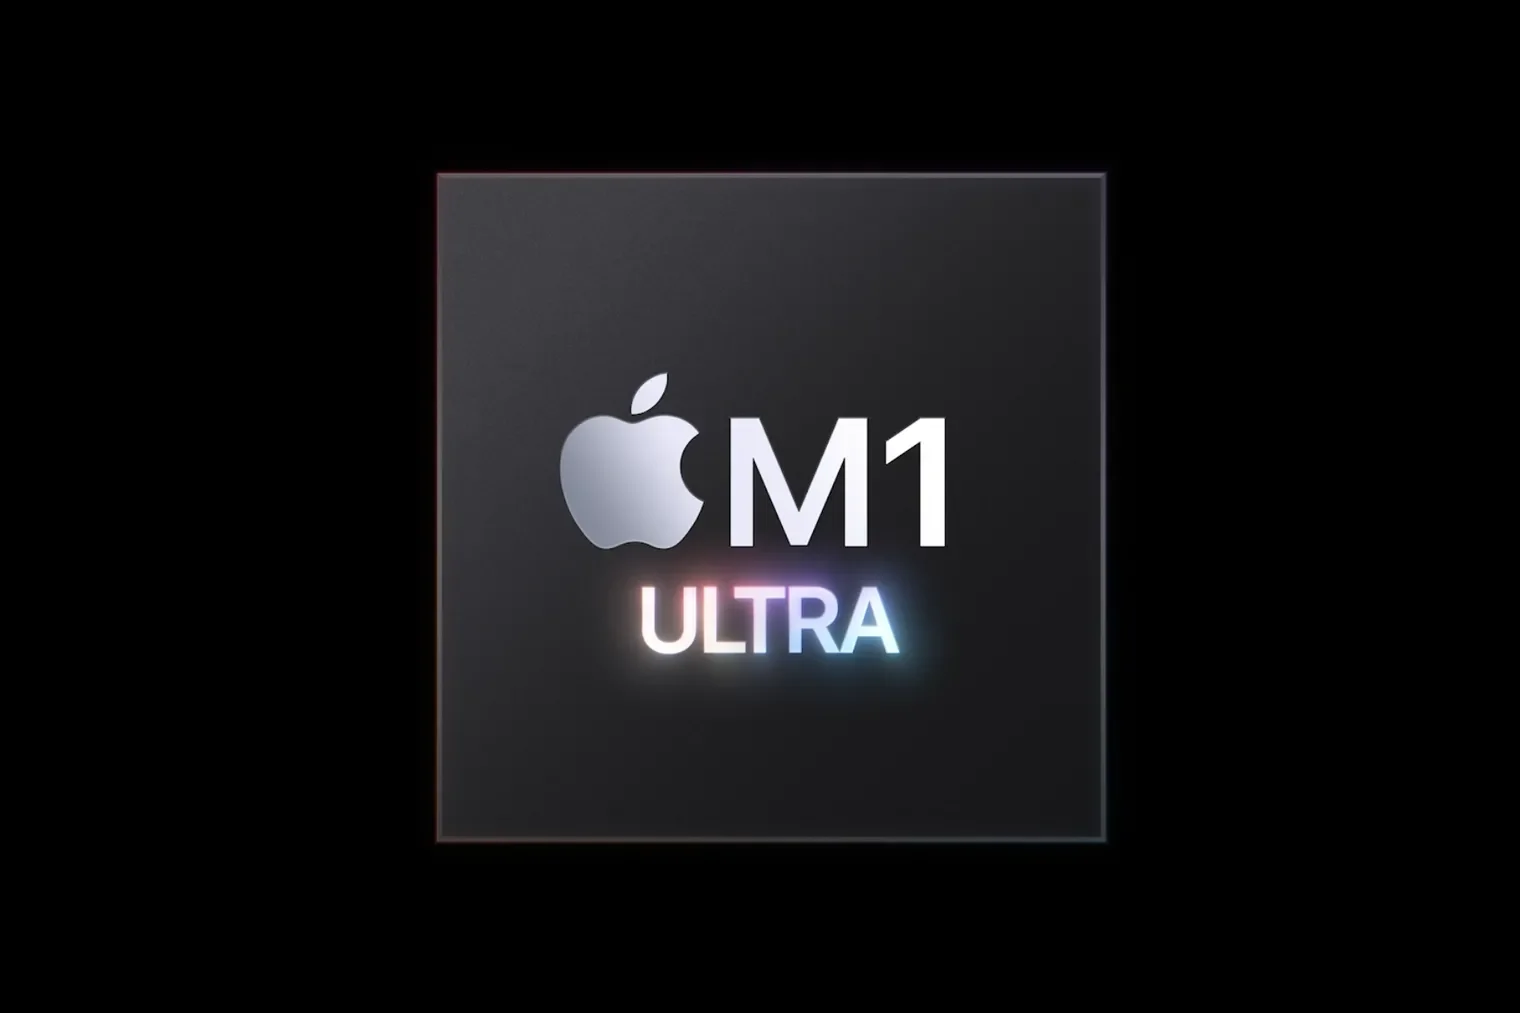 Το Apple M1 Ultra «ρίχτηκε» σε μία μάχη που δεν μπορούσε να κερδίσει ενάντια στην GeForce RTX 3090